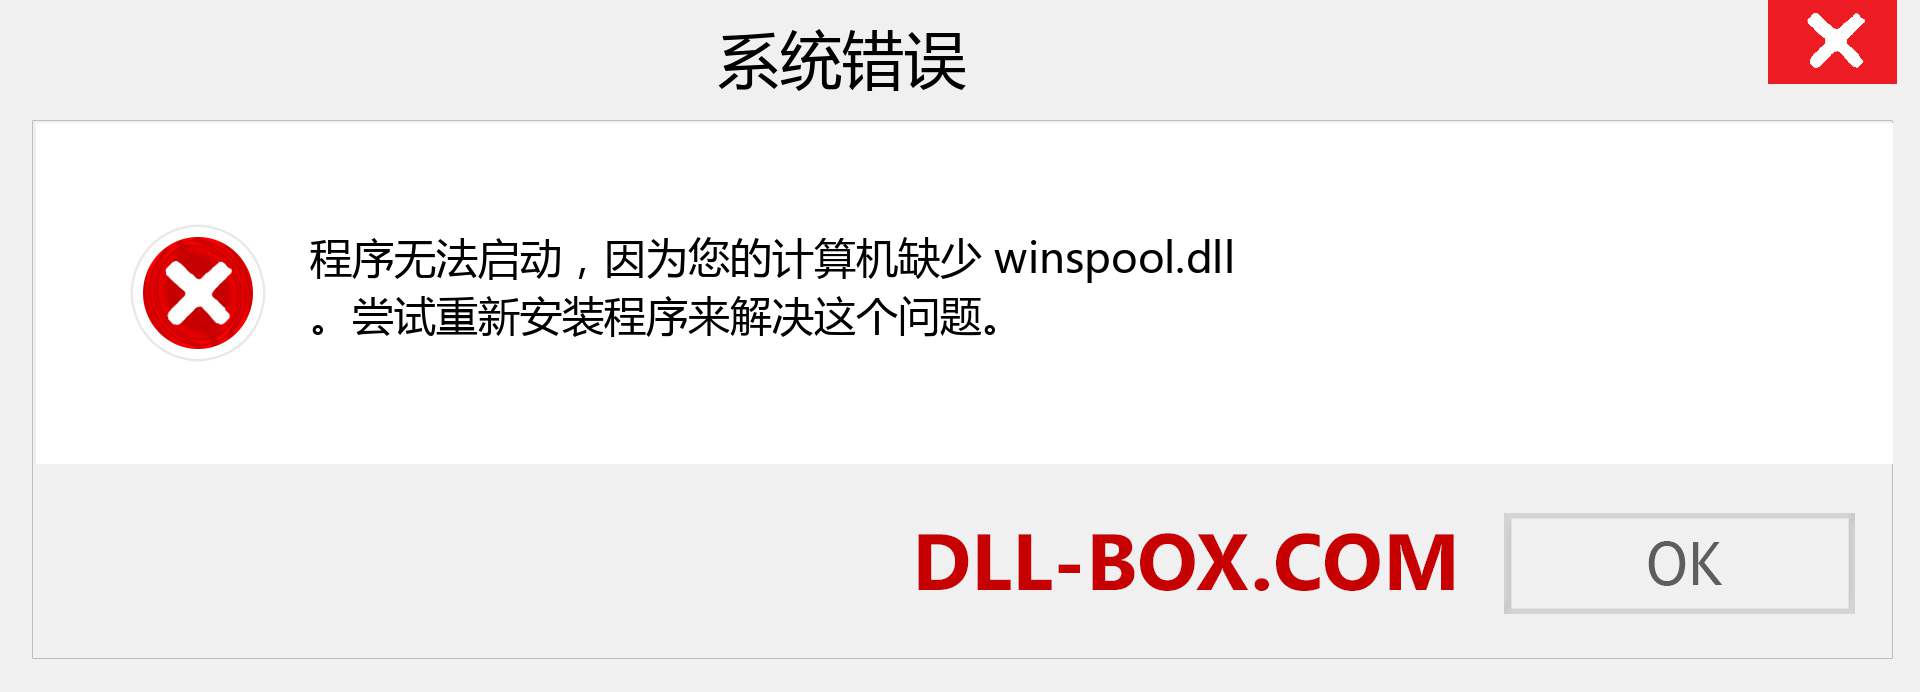 winspool.dll 文件丢失？。 适用于 Windows 7、8、10 的下载 - 修复 Windows、照片、图像上的 winspool dll 丢失错误